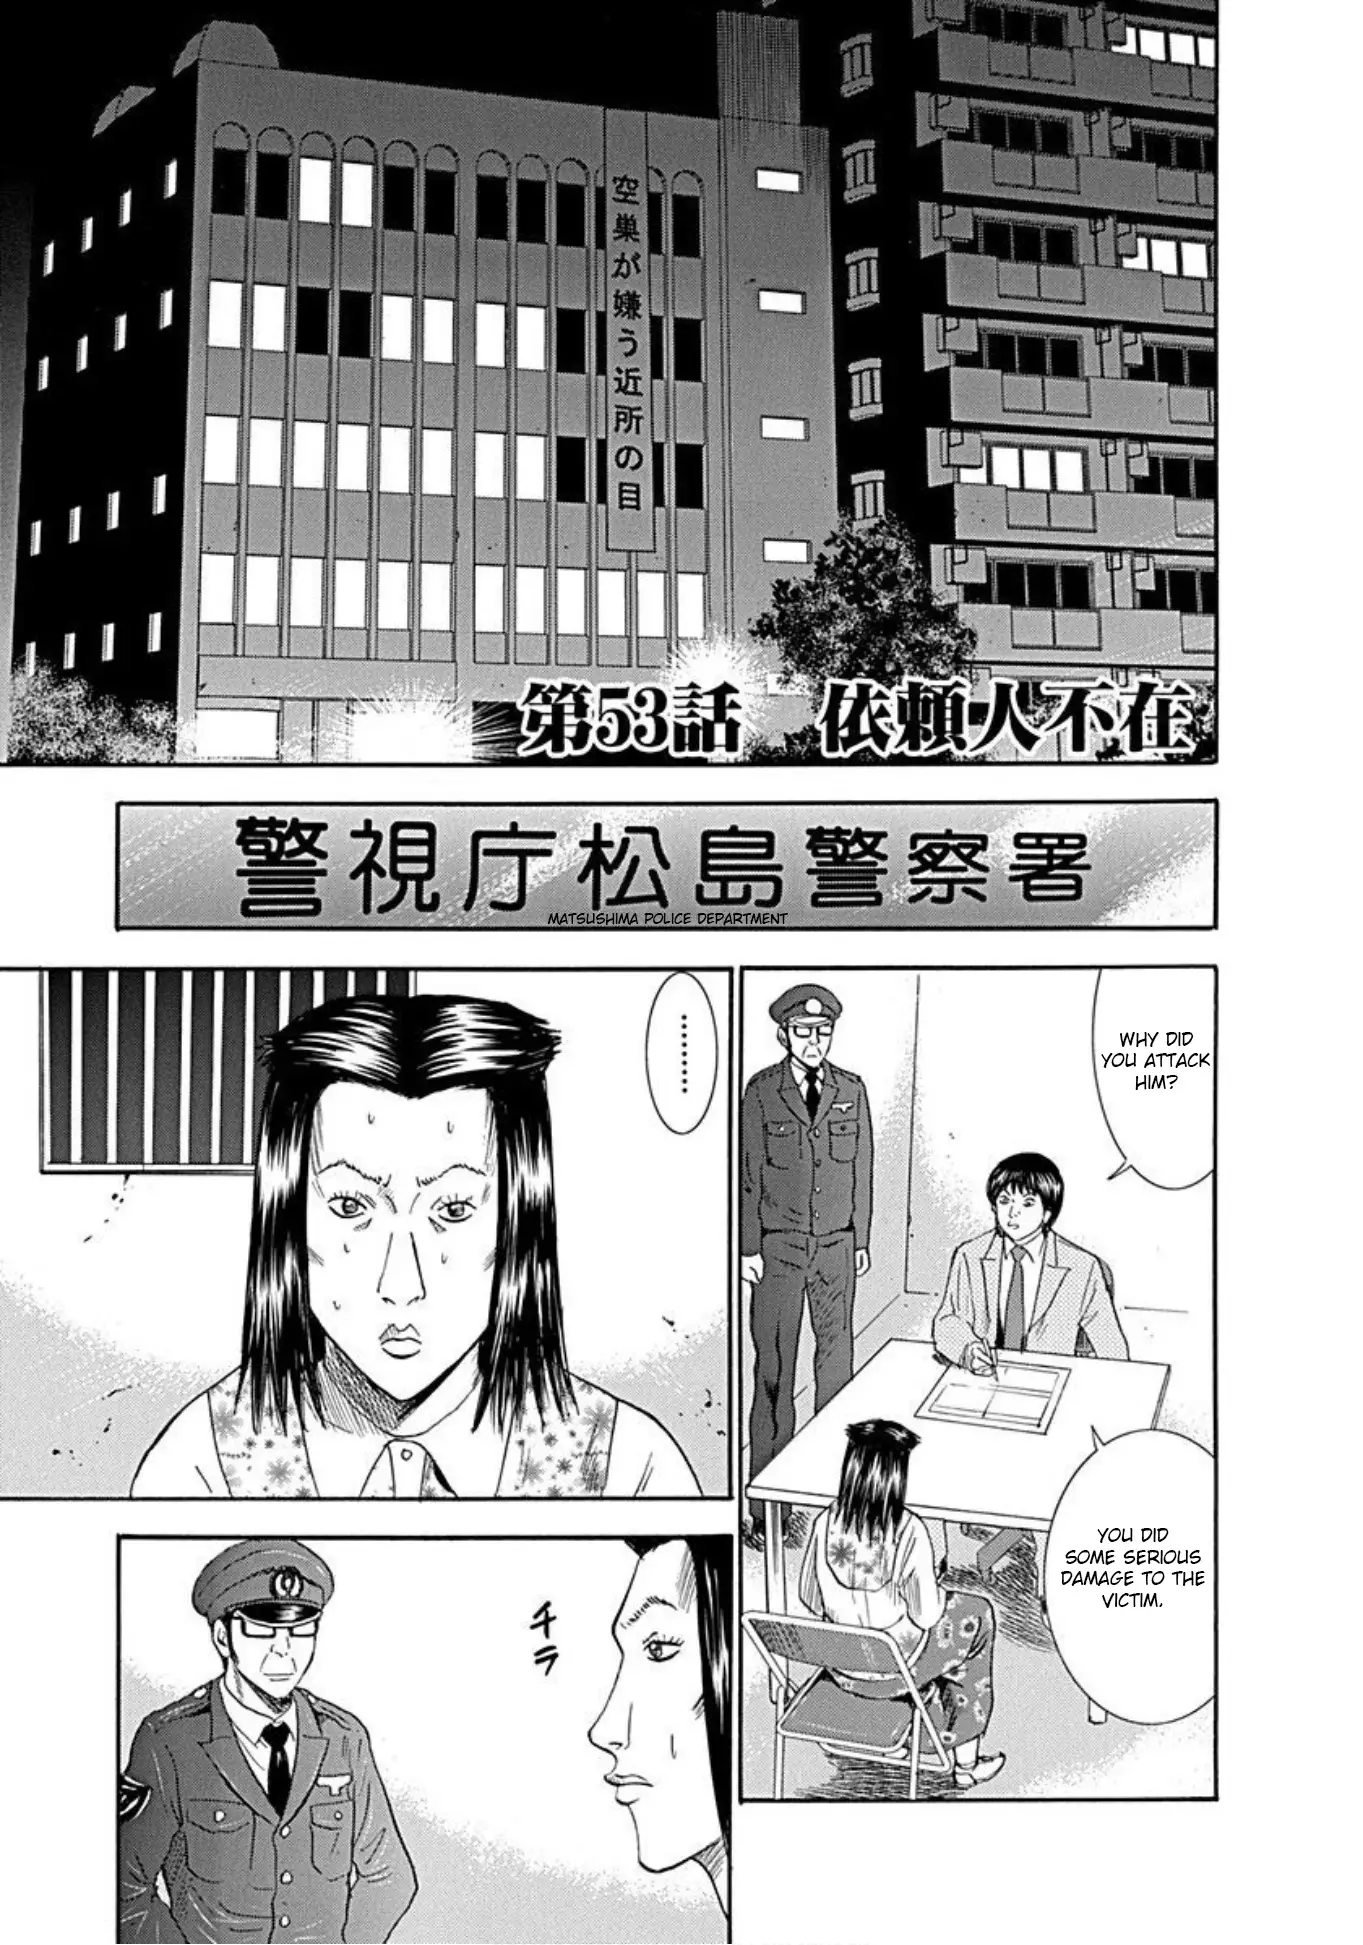 Uramiya Honpo - 53 page 1-9cd48107